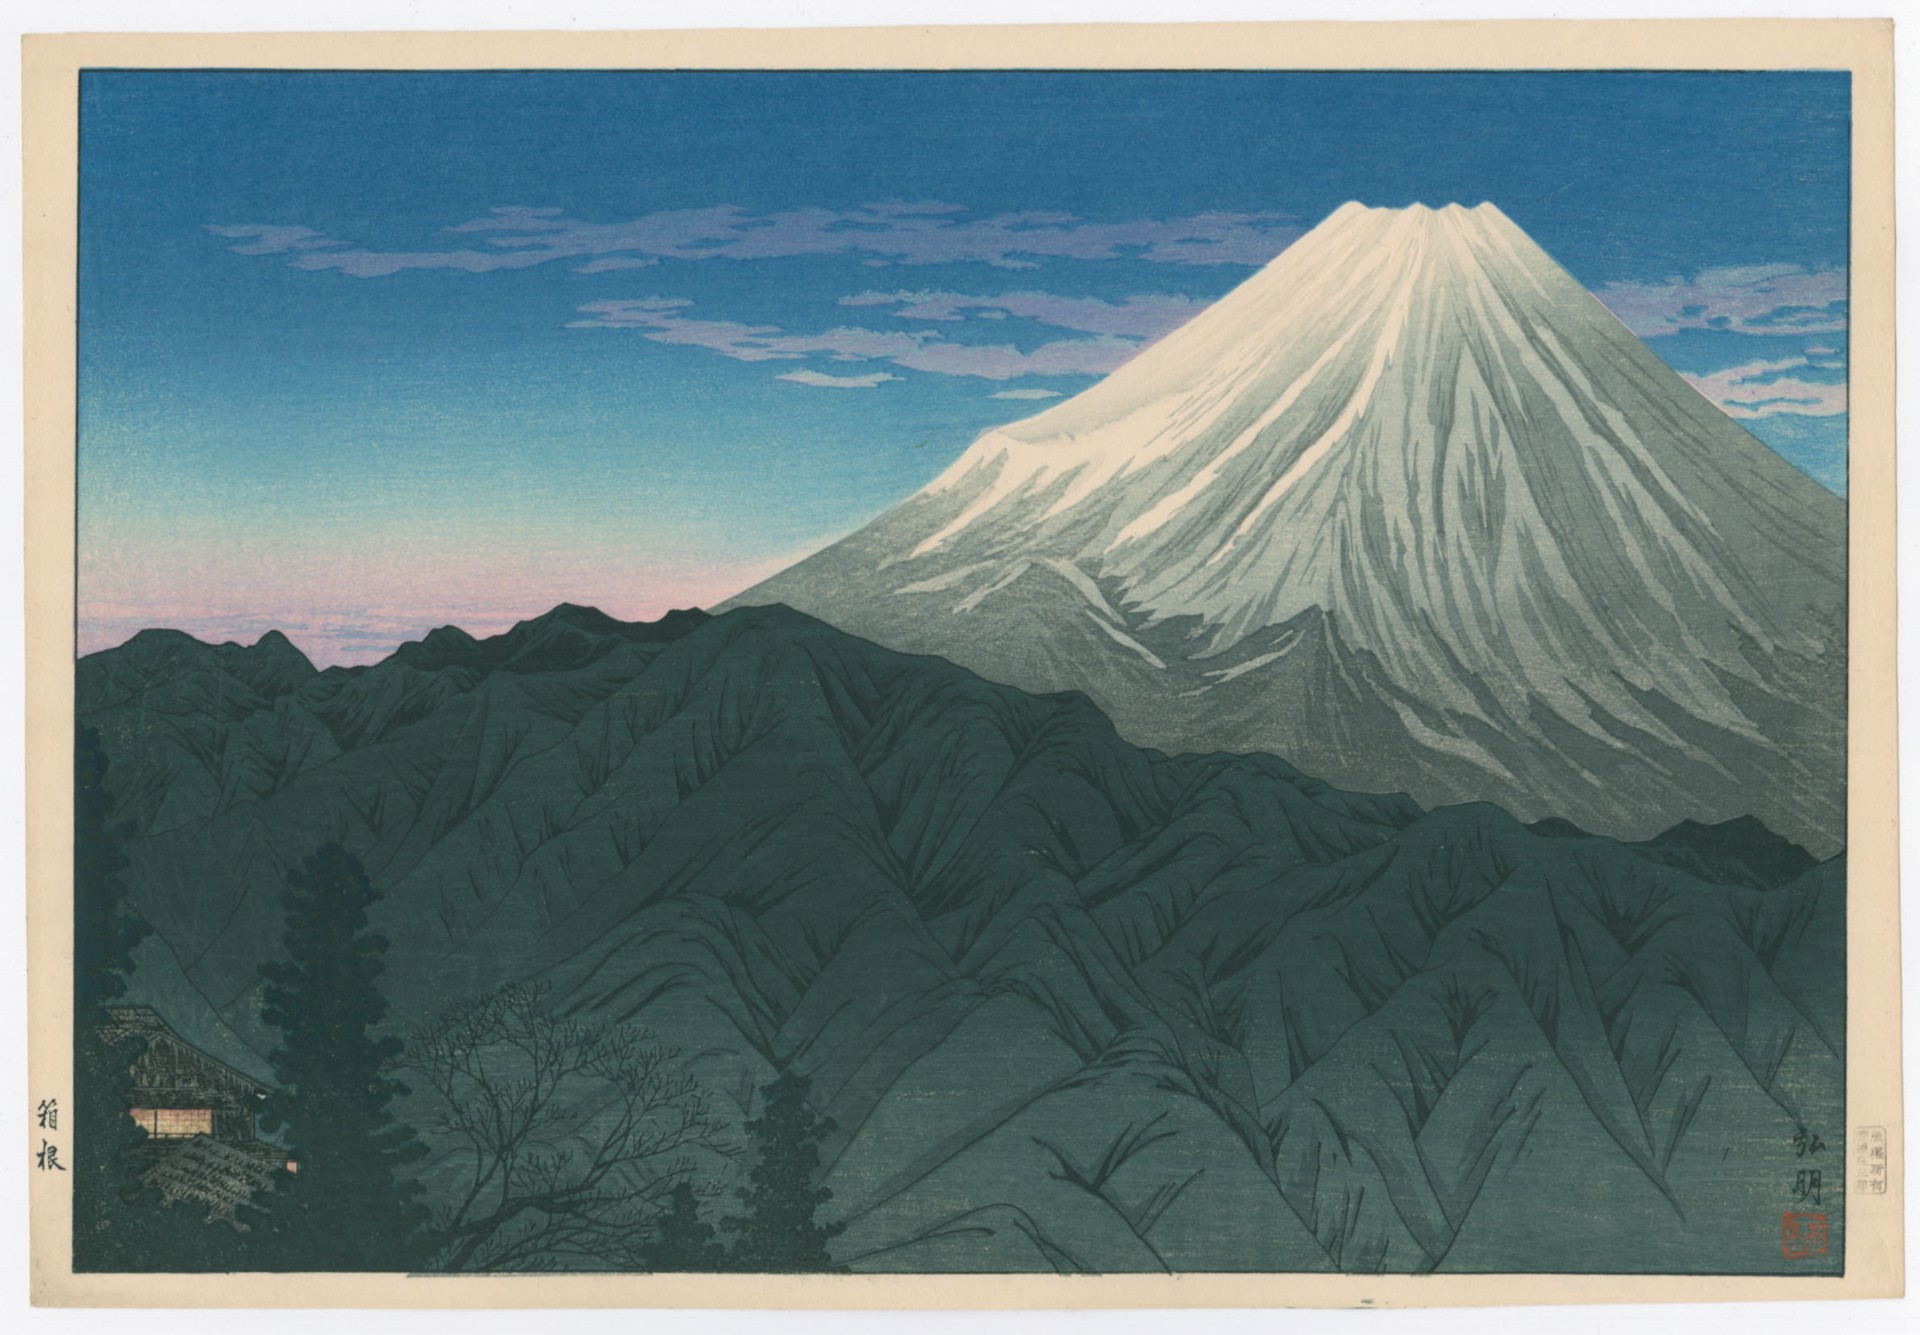 Mt. Fuji from Hakone by Takahashi Hiroaki